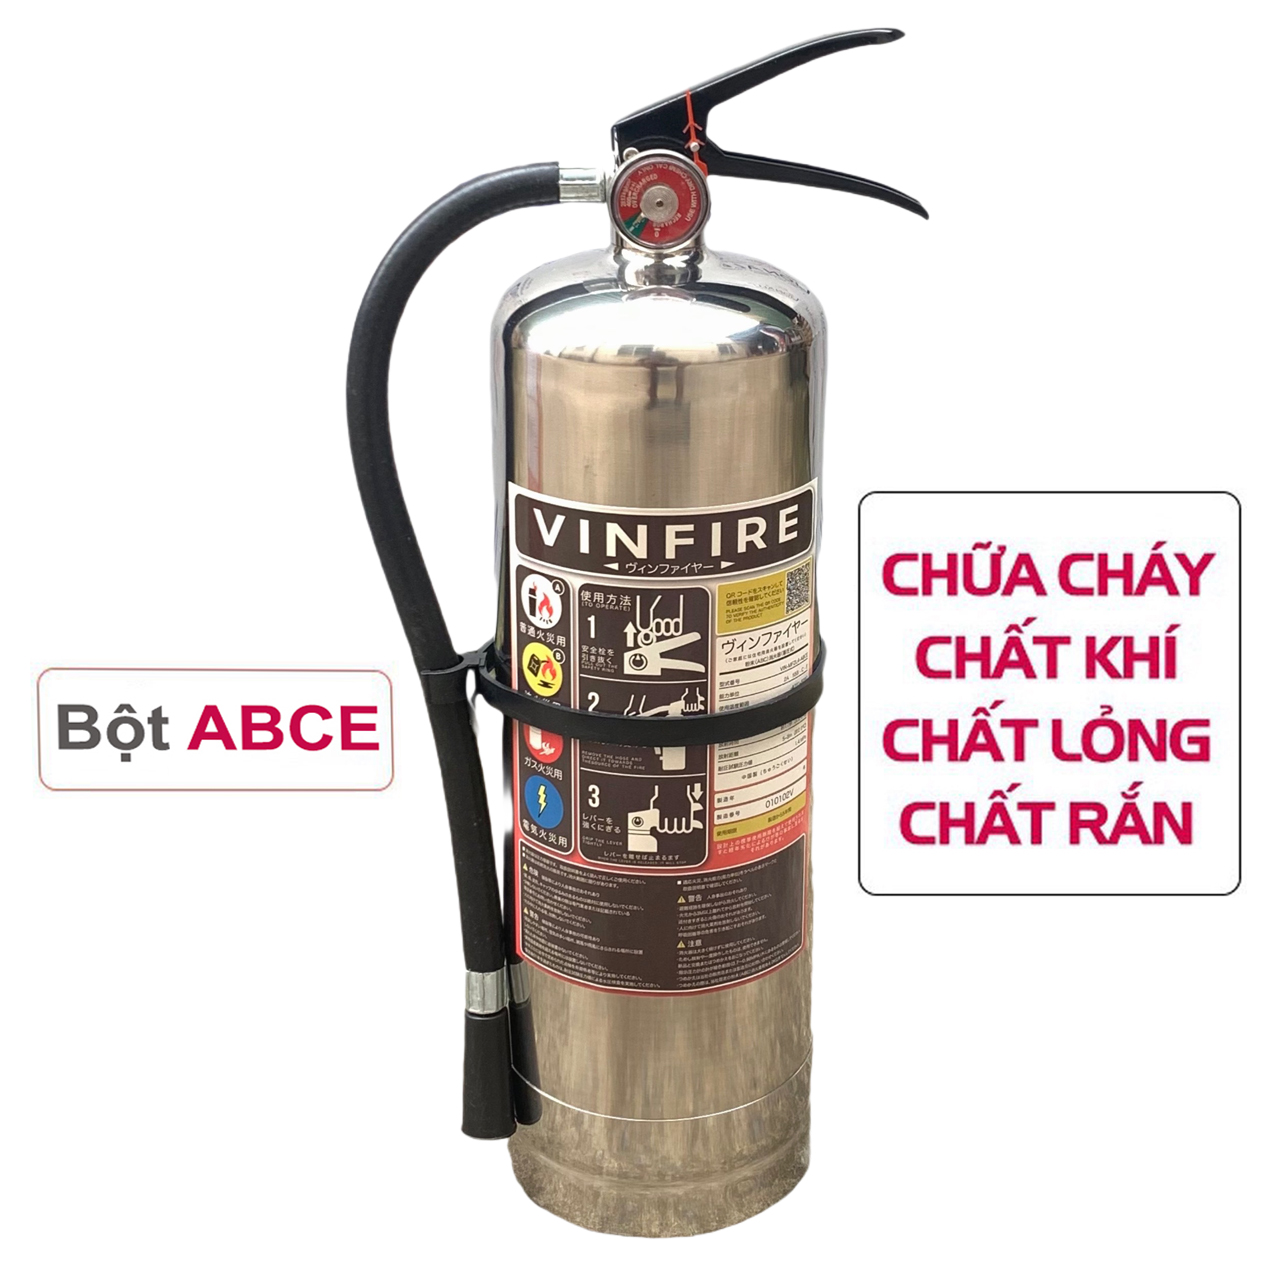 Bình Chữa Cháy Bột ABC (e) 4kg tiêu chuẩn Nhật Bản chất lượng cao xịt là tắt, inox 304 ko gỉ